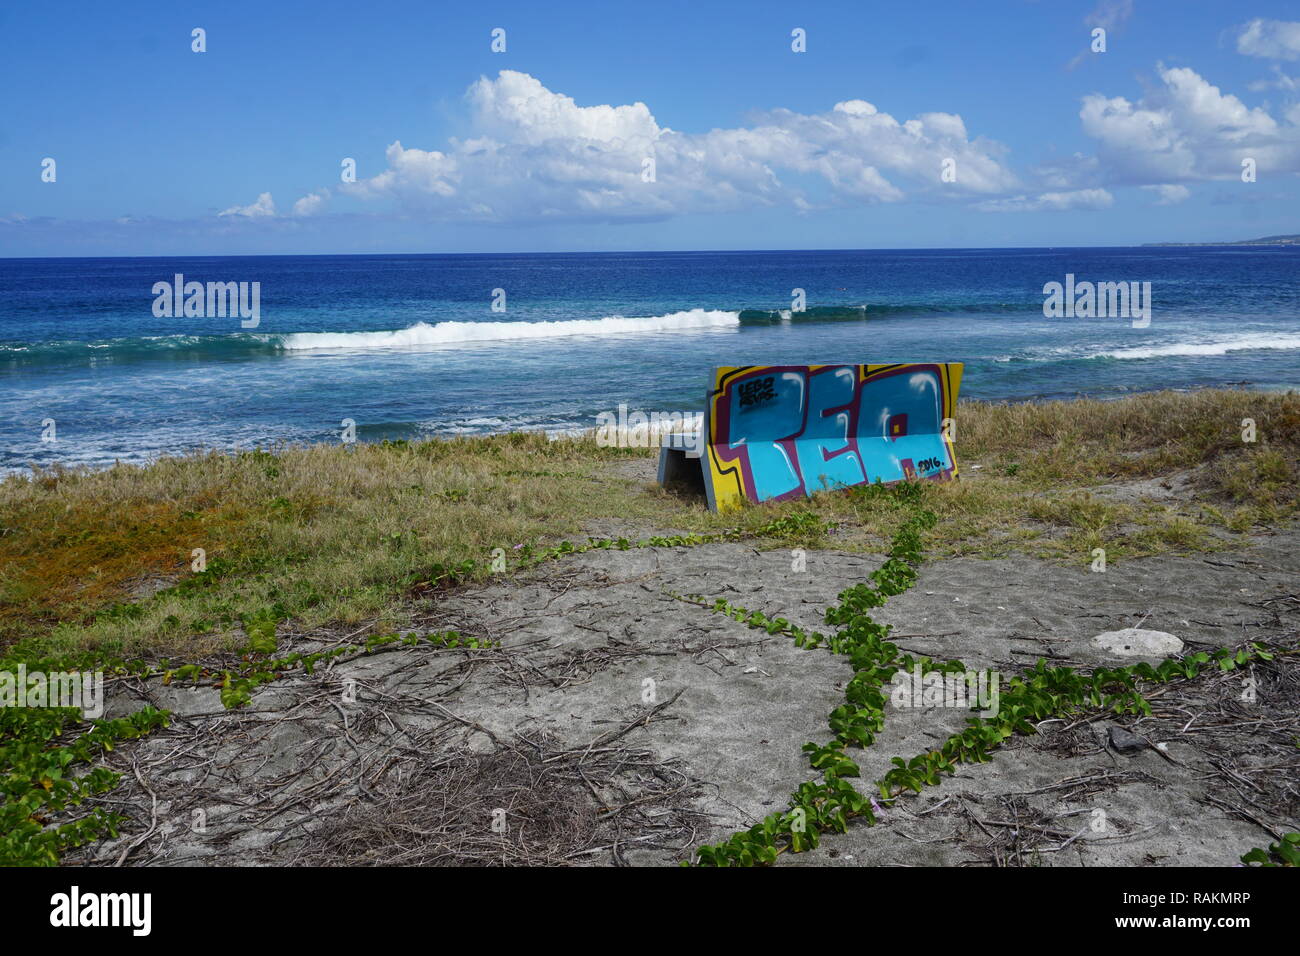 Un lone contrassegnate da banco in pietra con una vista della spiaggia e del mare a La Réunion, Francia in una limpida giornata di blu Foto Stock